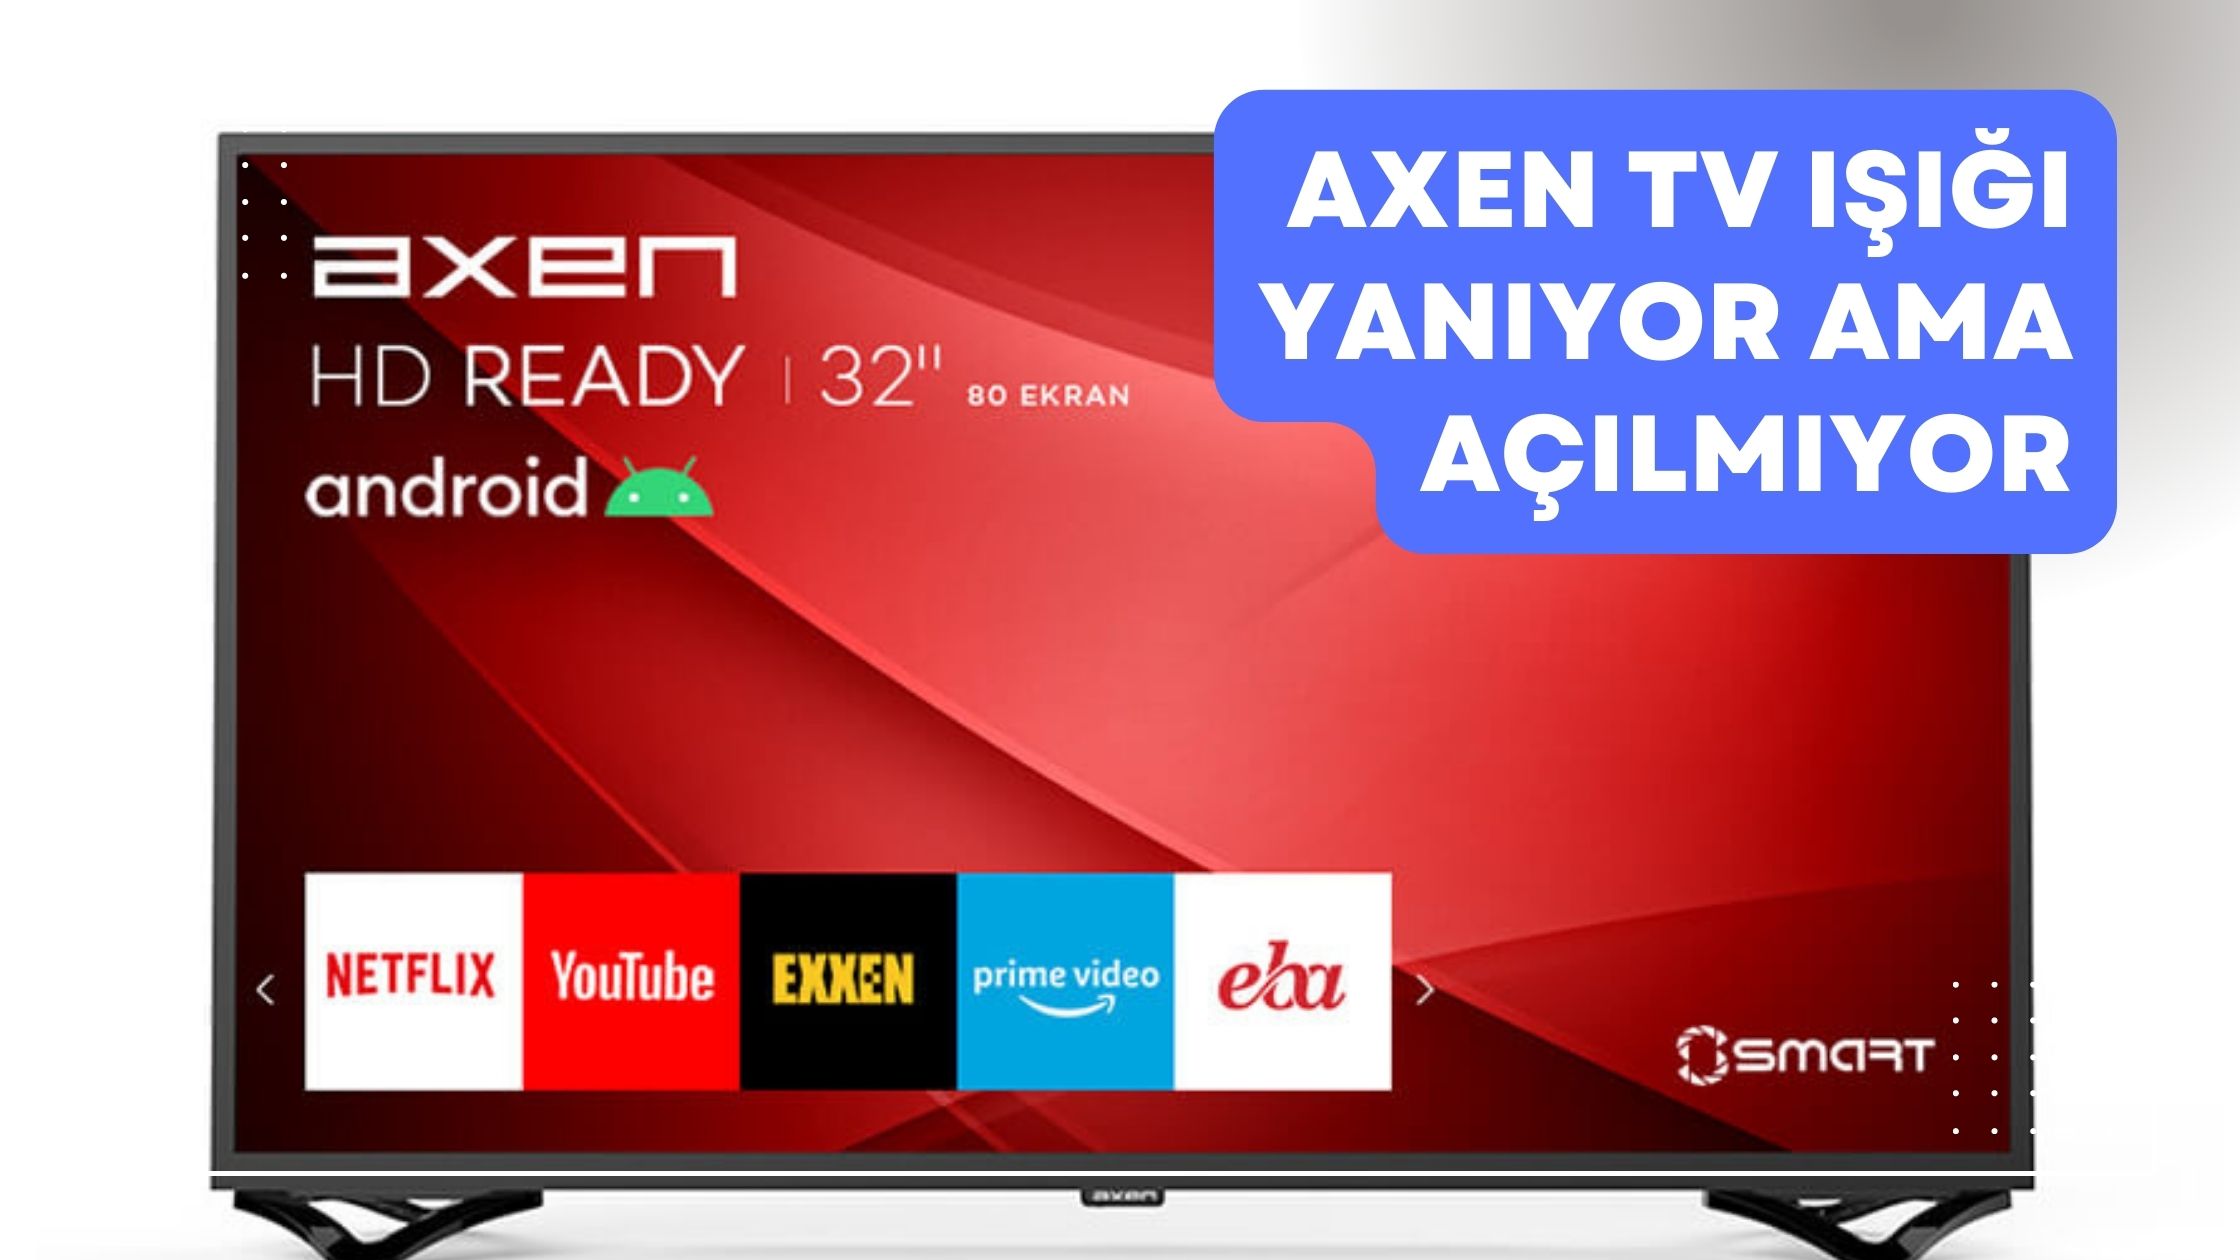 Axen TV Işığı Yanıyor Ama Açılmıyor